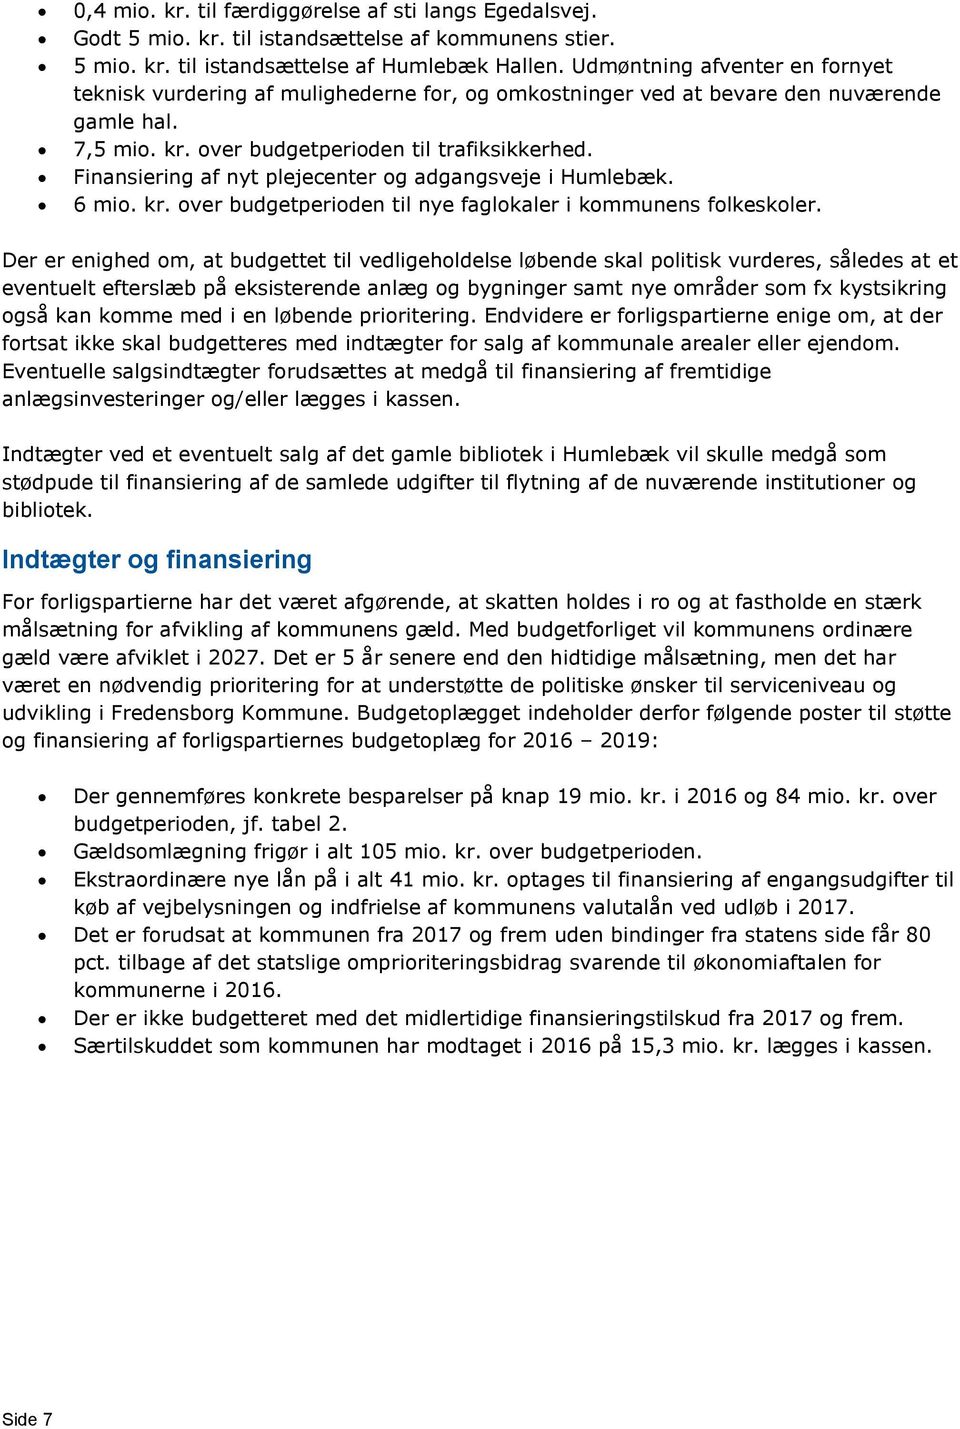 Finansiering af nyt plejecenter og adgangsveje i Humlebæk. 6 mio. kr. over budgetperioden til nye faglokaler i kommunens folkeskoler.